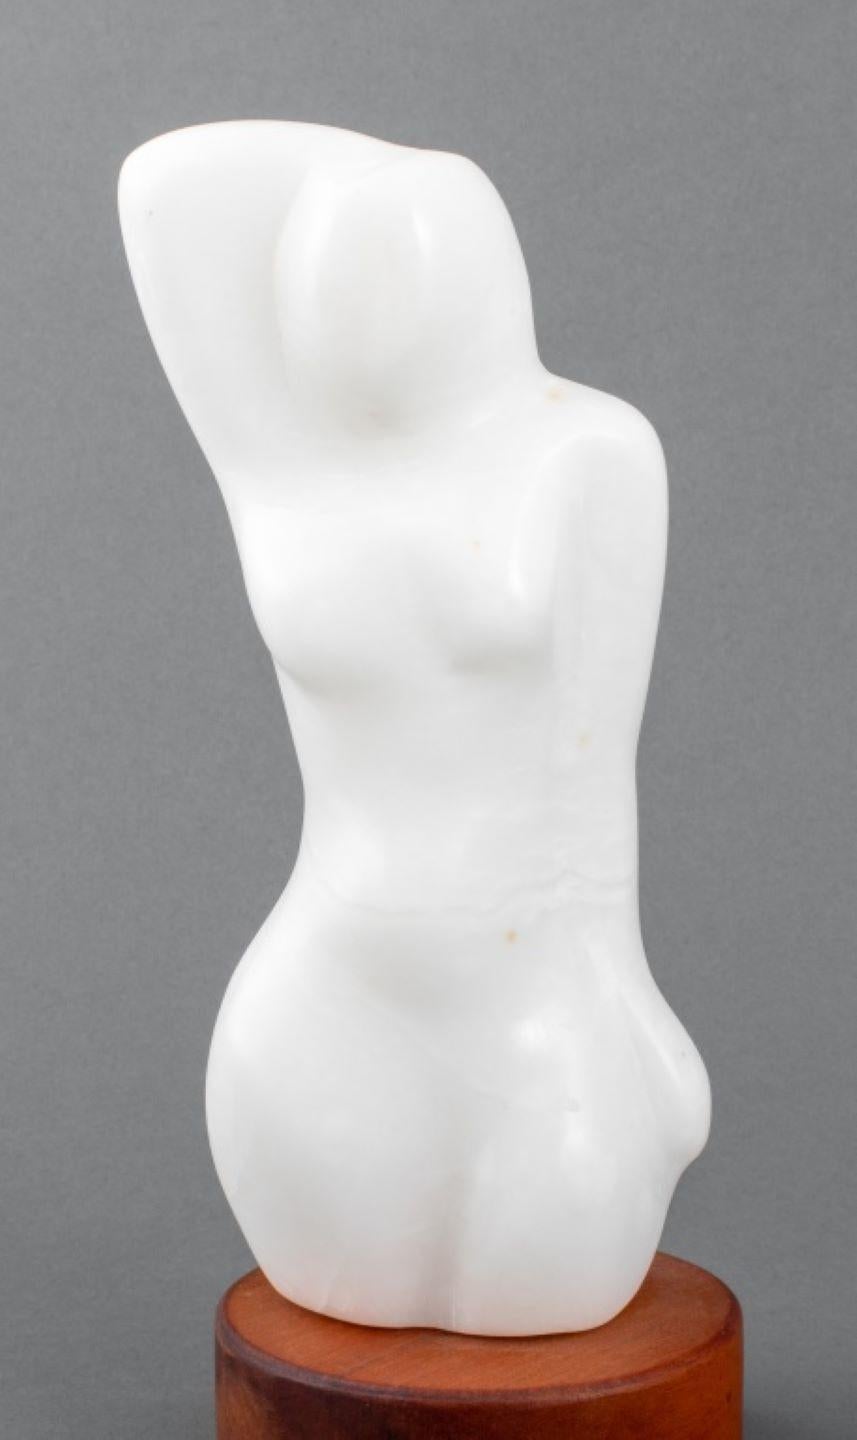 Joan Hyde Shapiro (américaine, XX-XXI) Sculpture en pierre d'albâtre blanche sculptée d'une figure féminine nue stylisée, signée au verso, montée sur une base en bois. Ensemble : 10,25